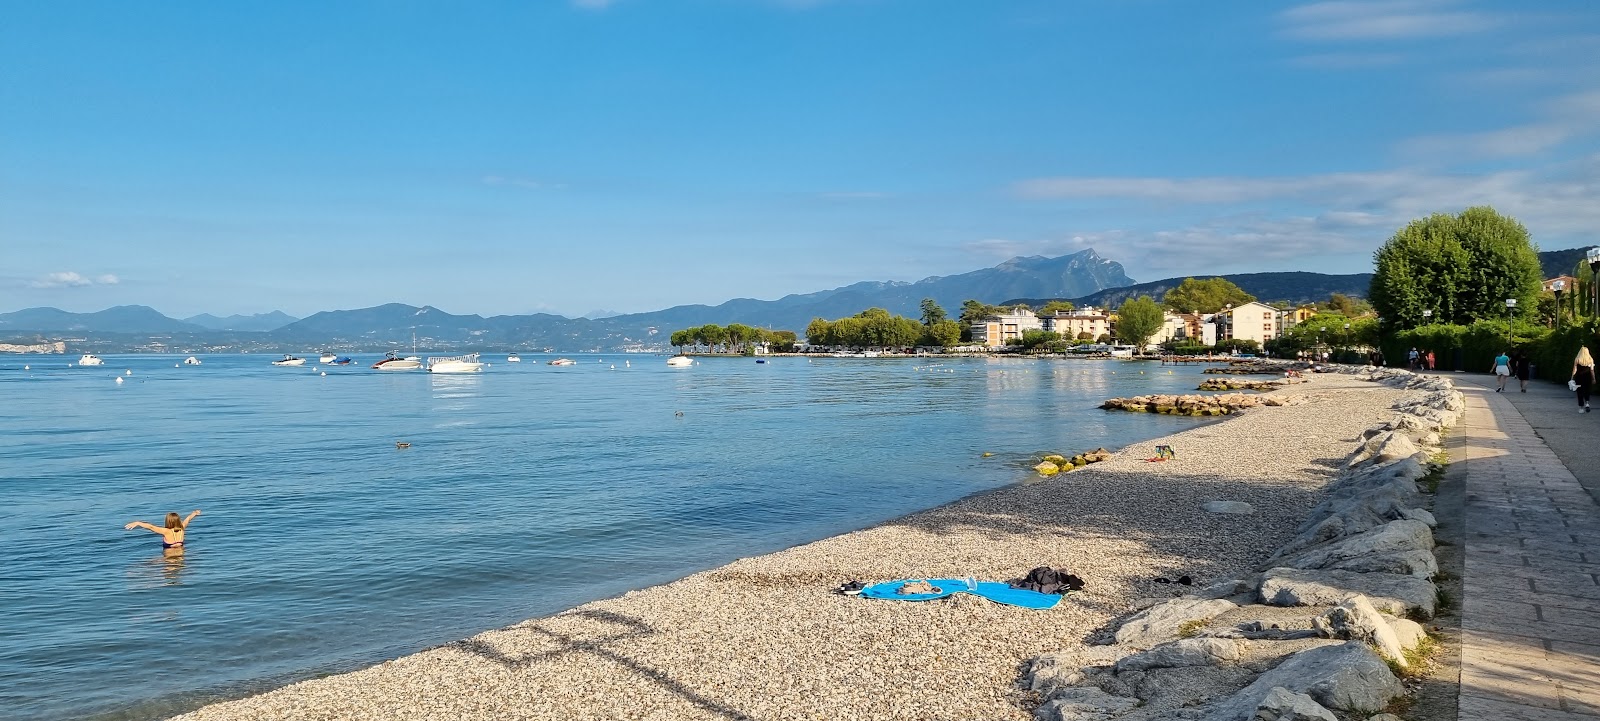 Foto van Spiaggia Lido di Cisano met grijze kiezel oppervlakte